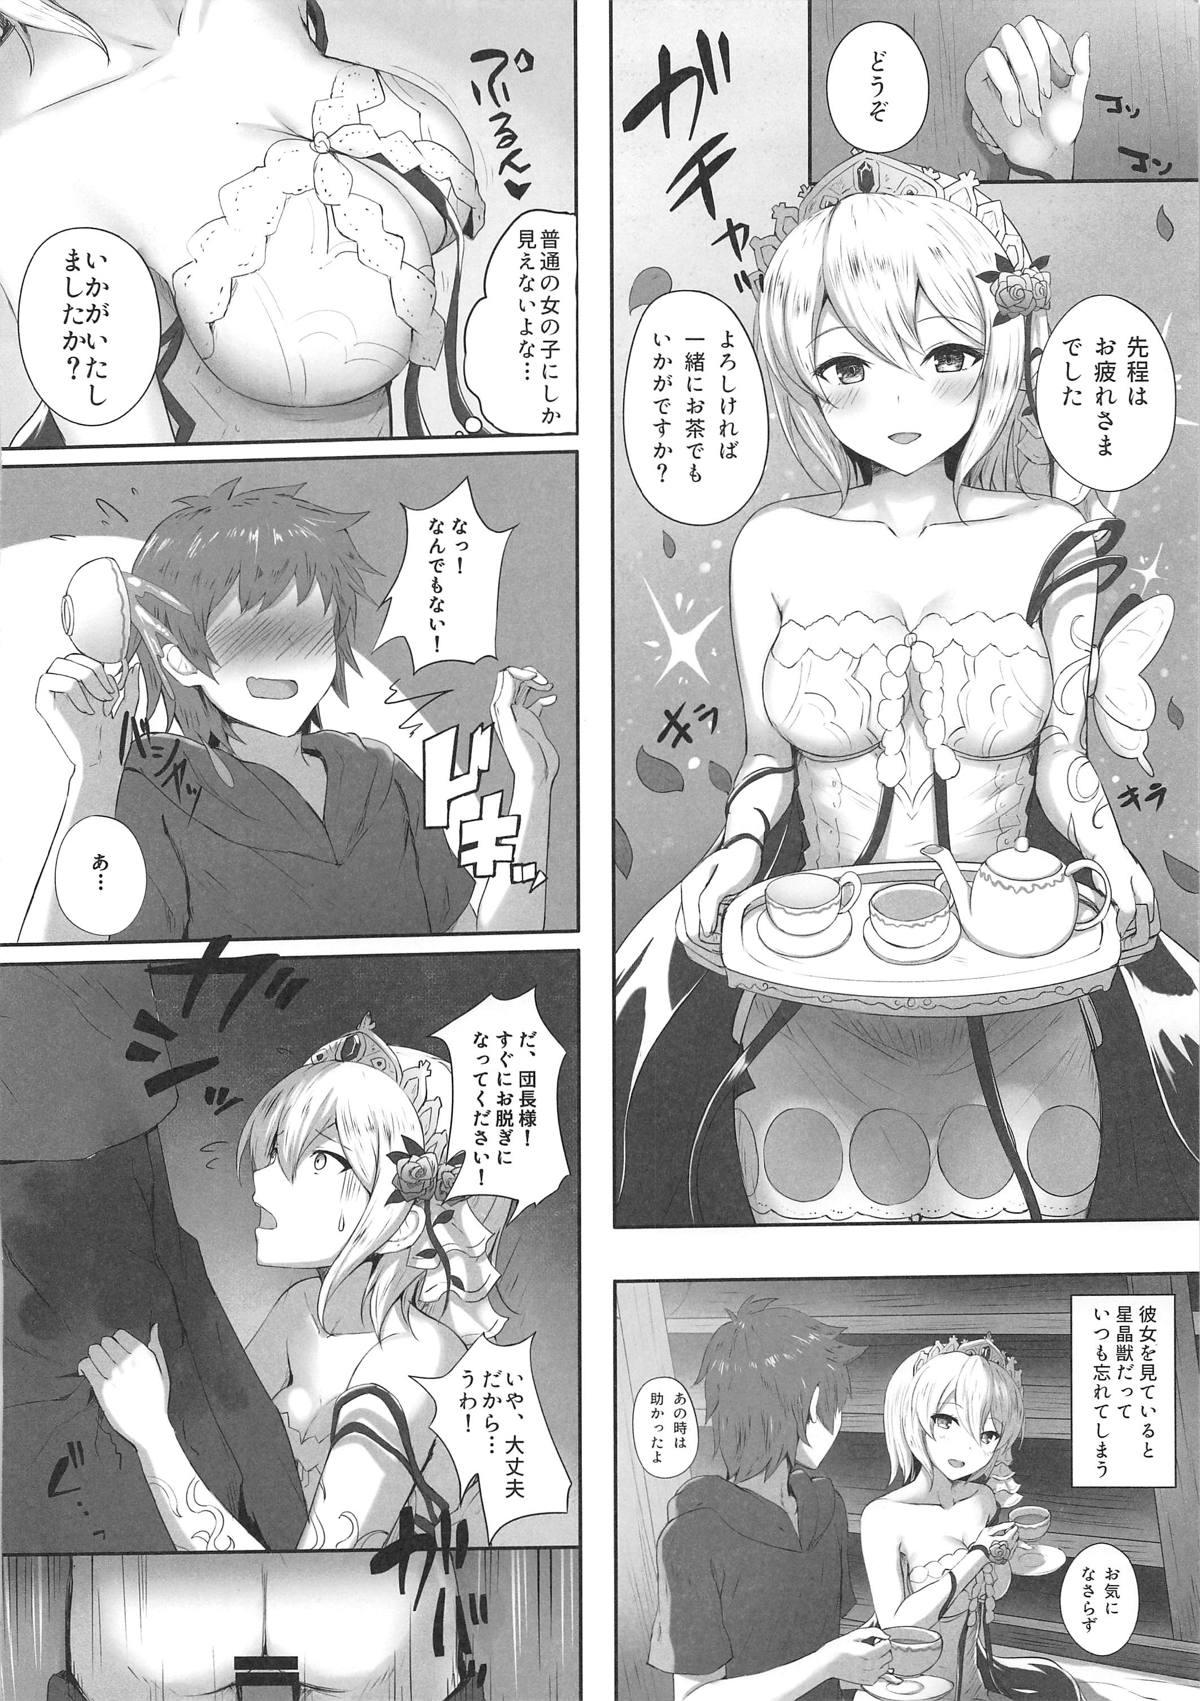 Interracial Sex Watashi no Karada, Suki ni Otsukainasaimase. - Granblue fantasy Eurosex - Page 5